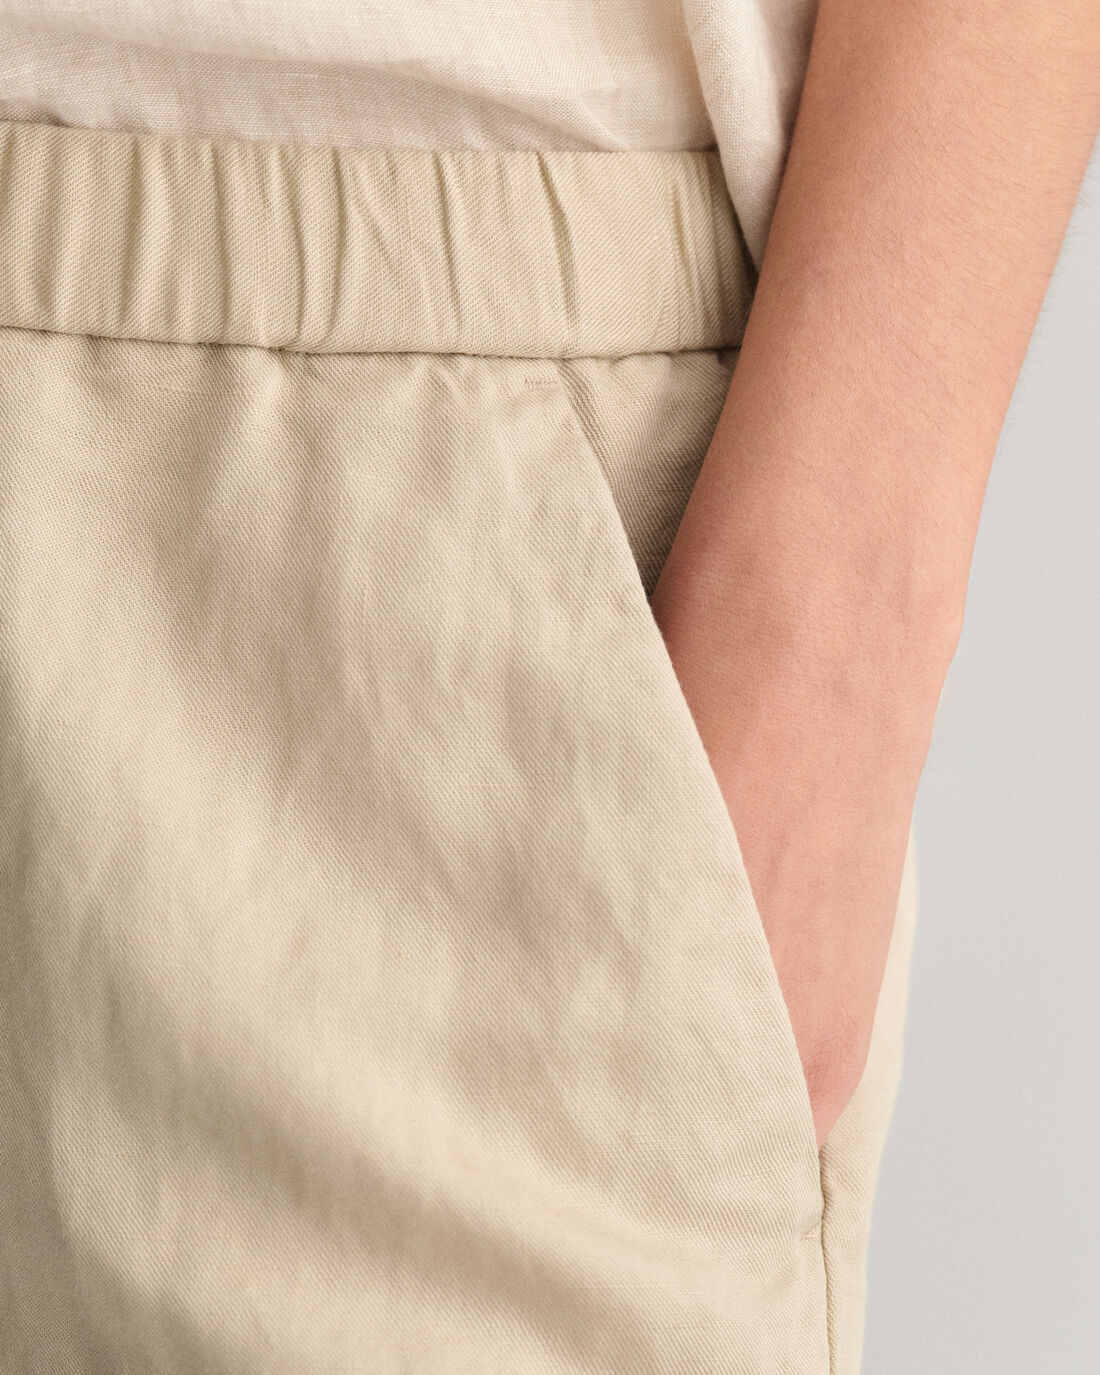 Linen Blend Pull on Shorts